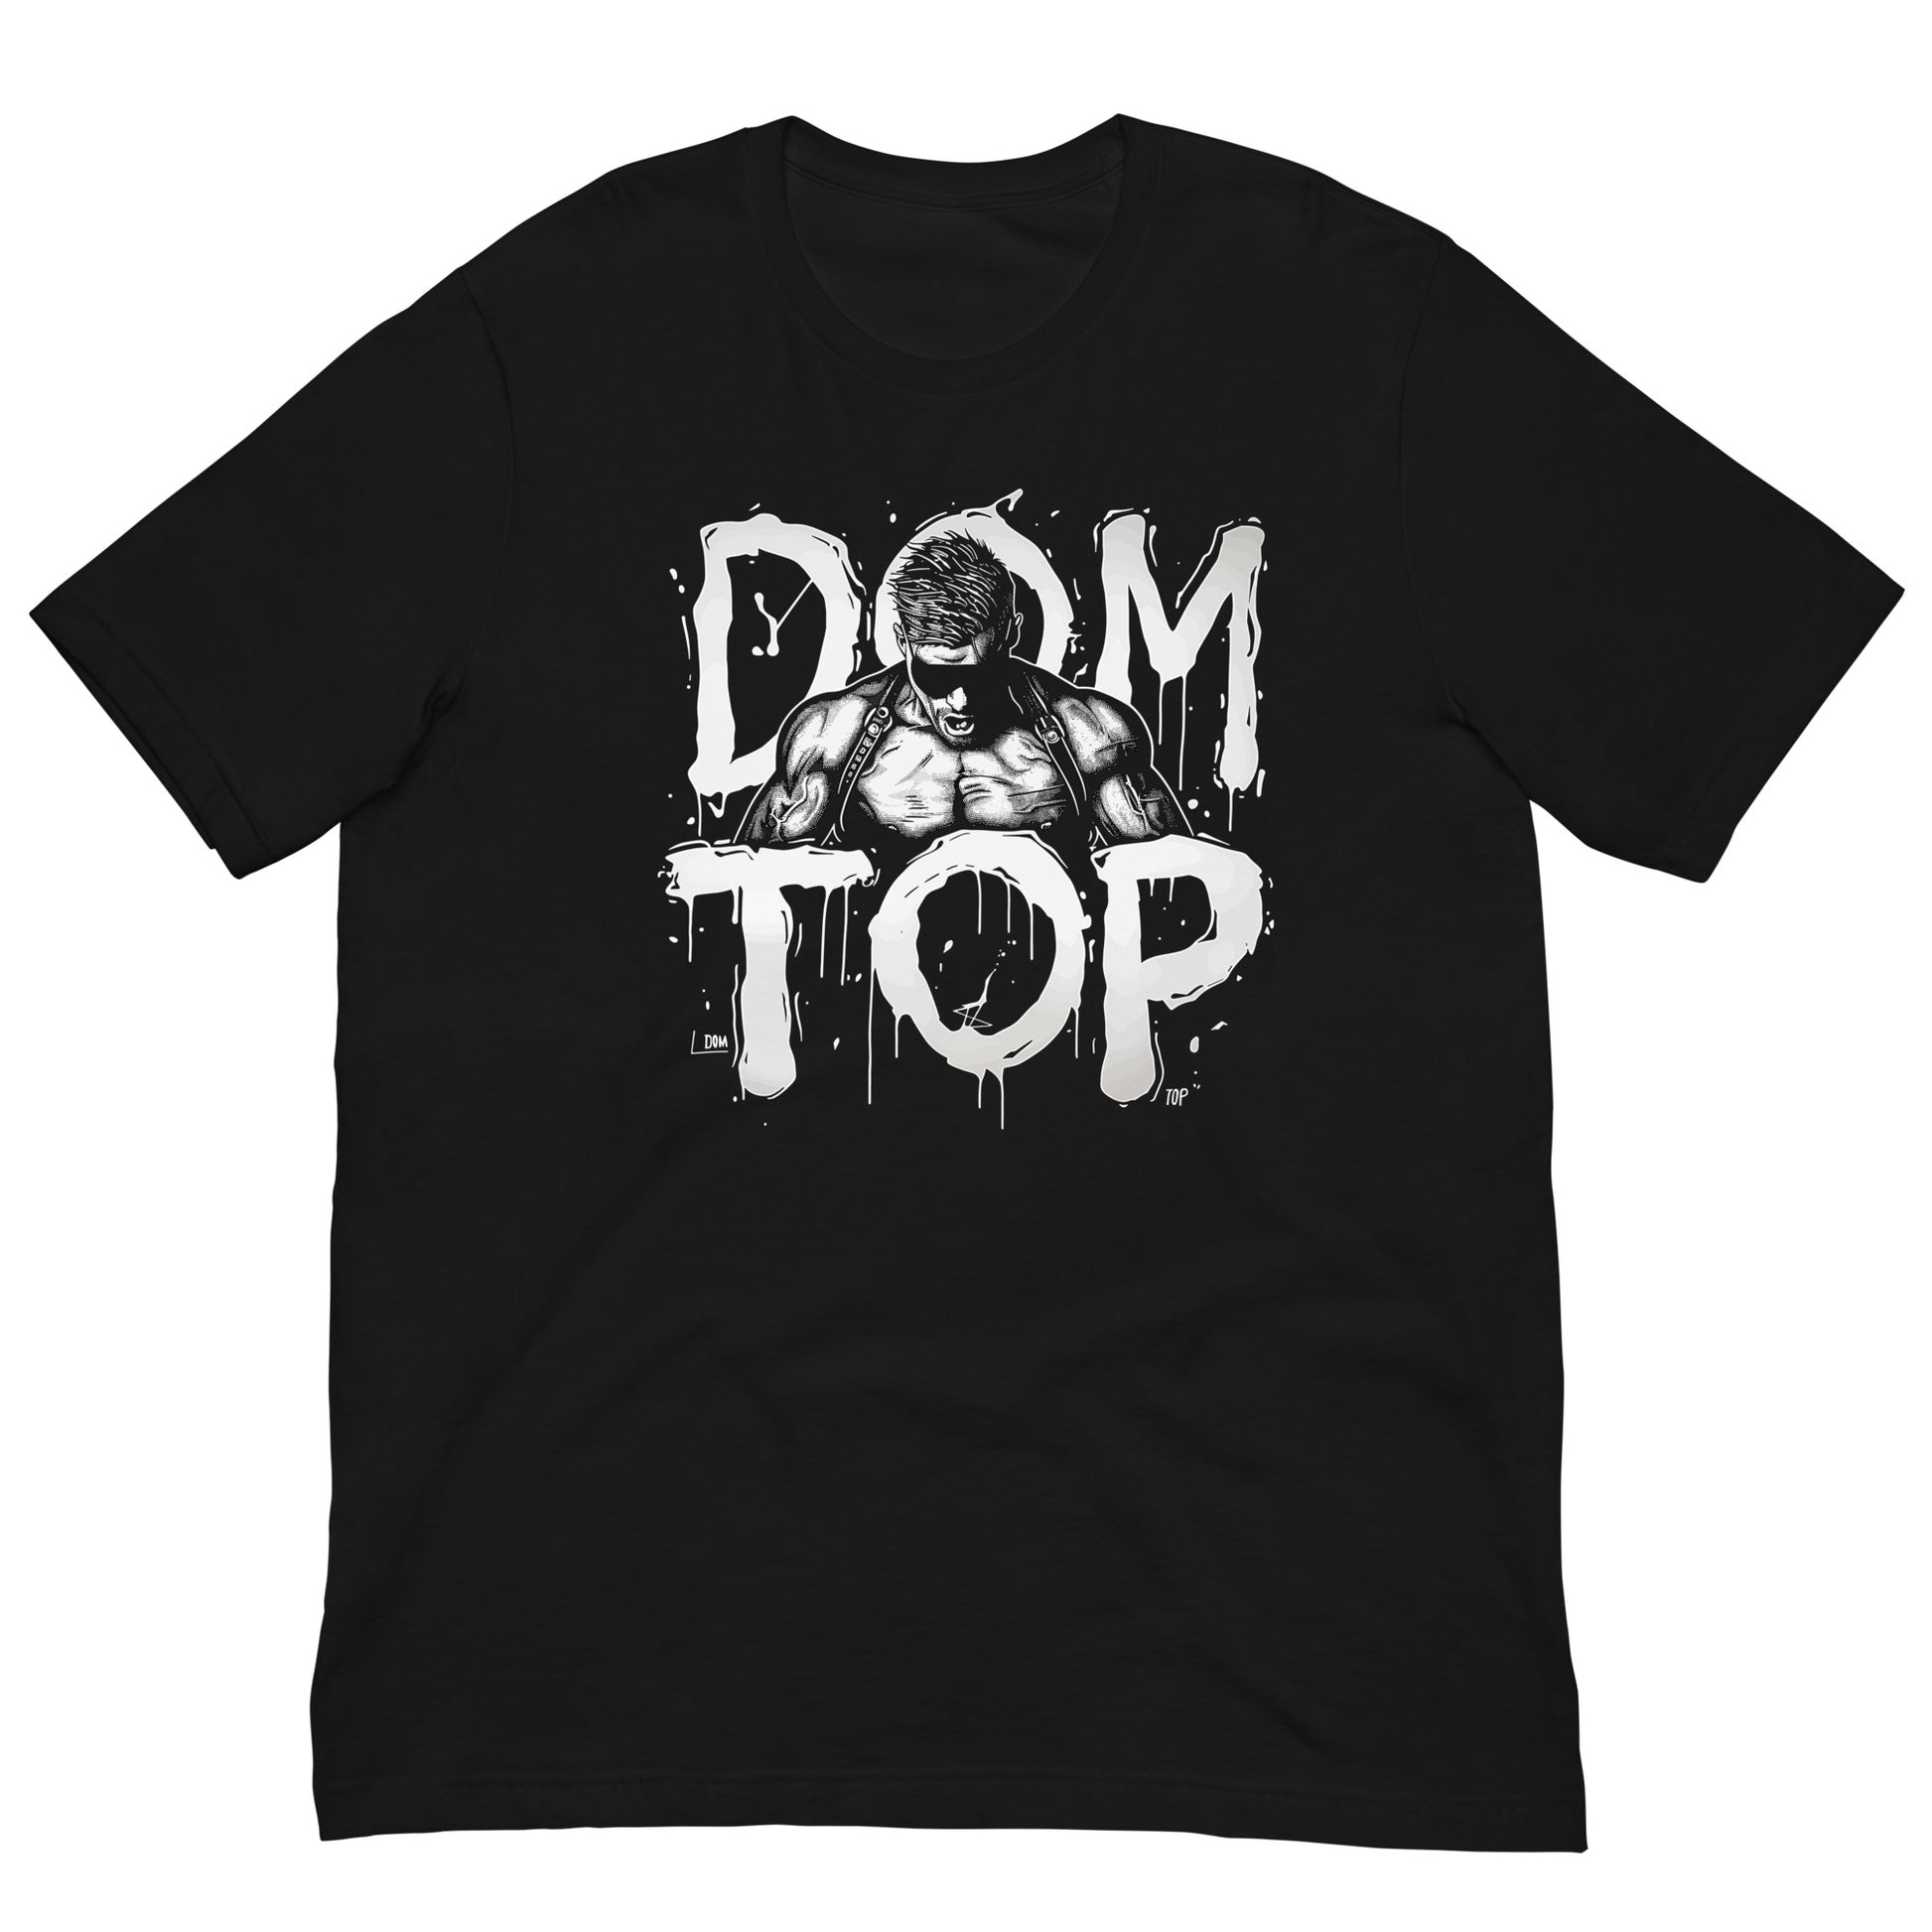 Assertive Dom Top Muscle - Power Gay Bear T-Shirt